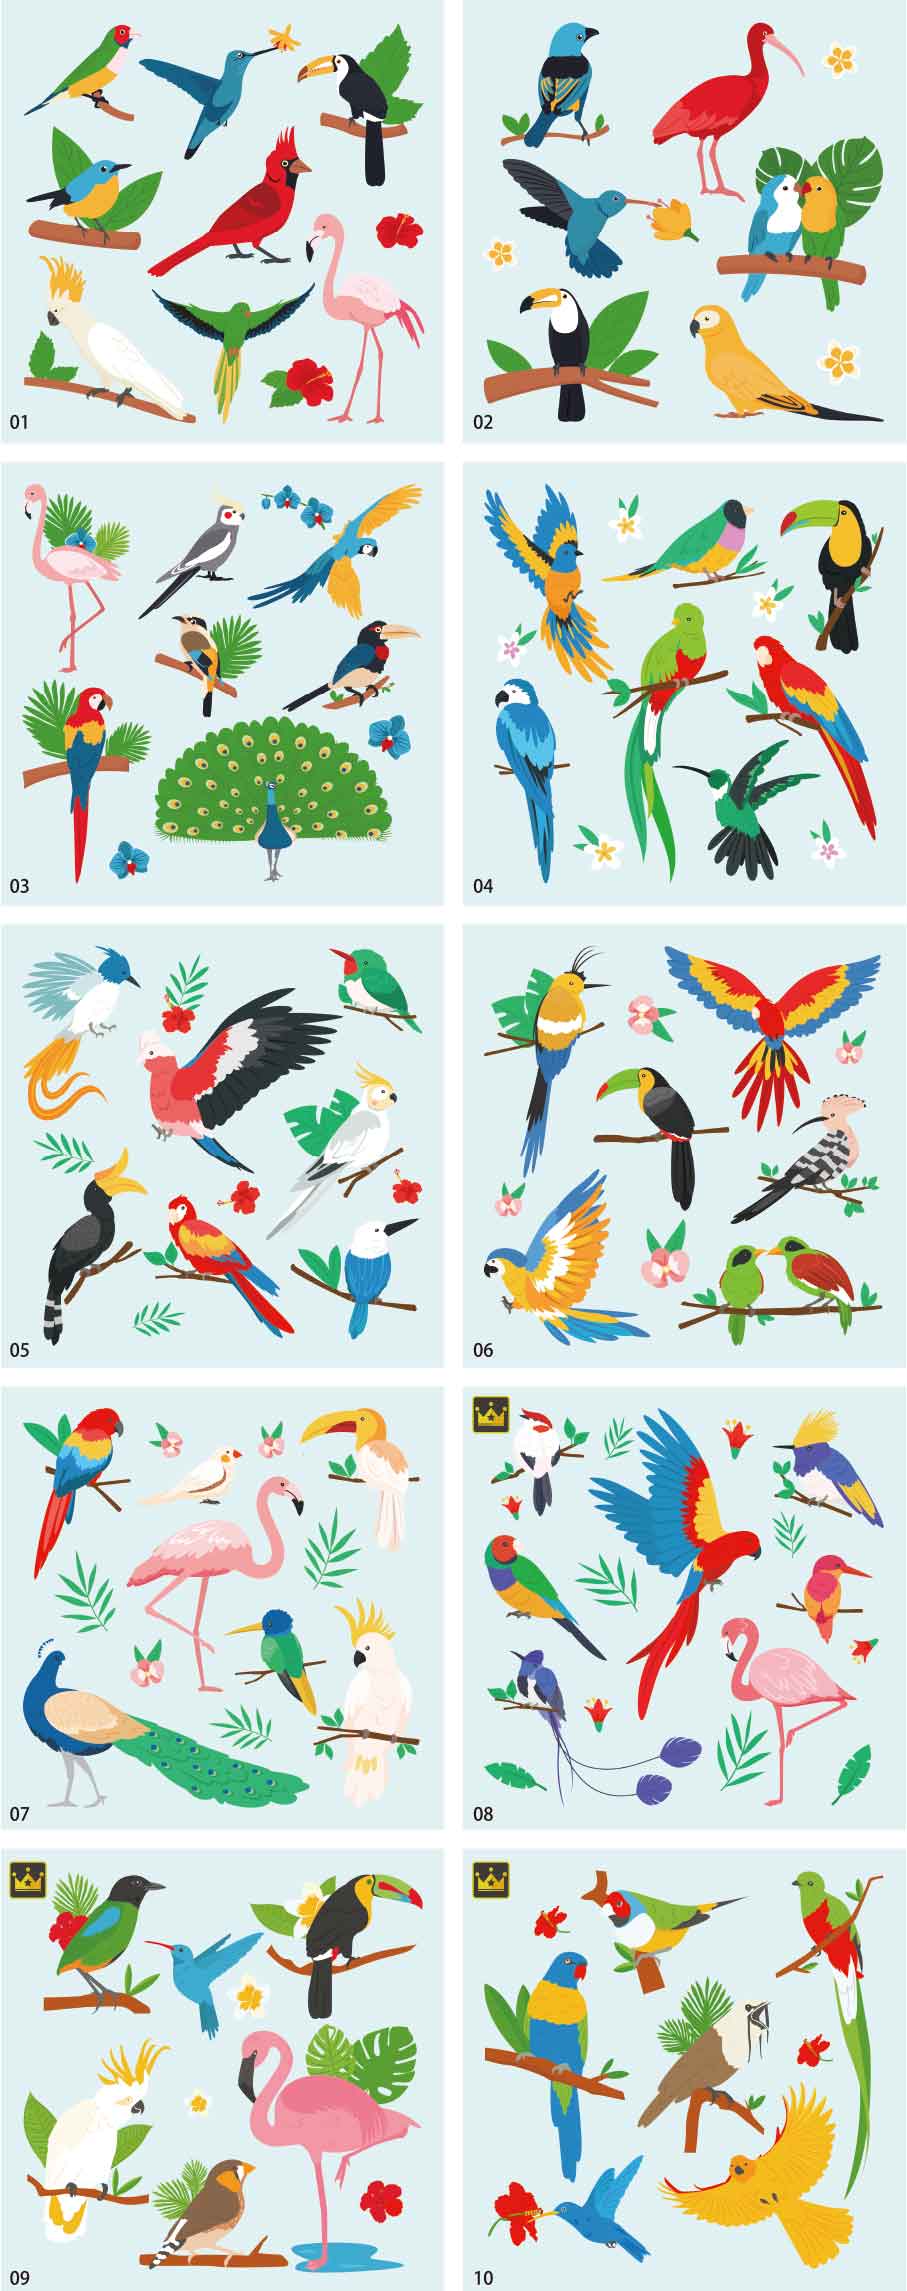 Bộ sưu tập minh họa chim nhiệt đới